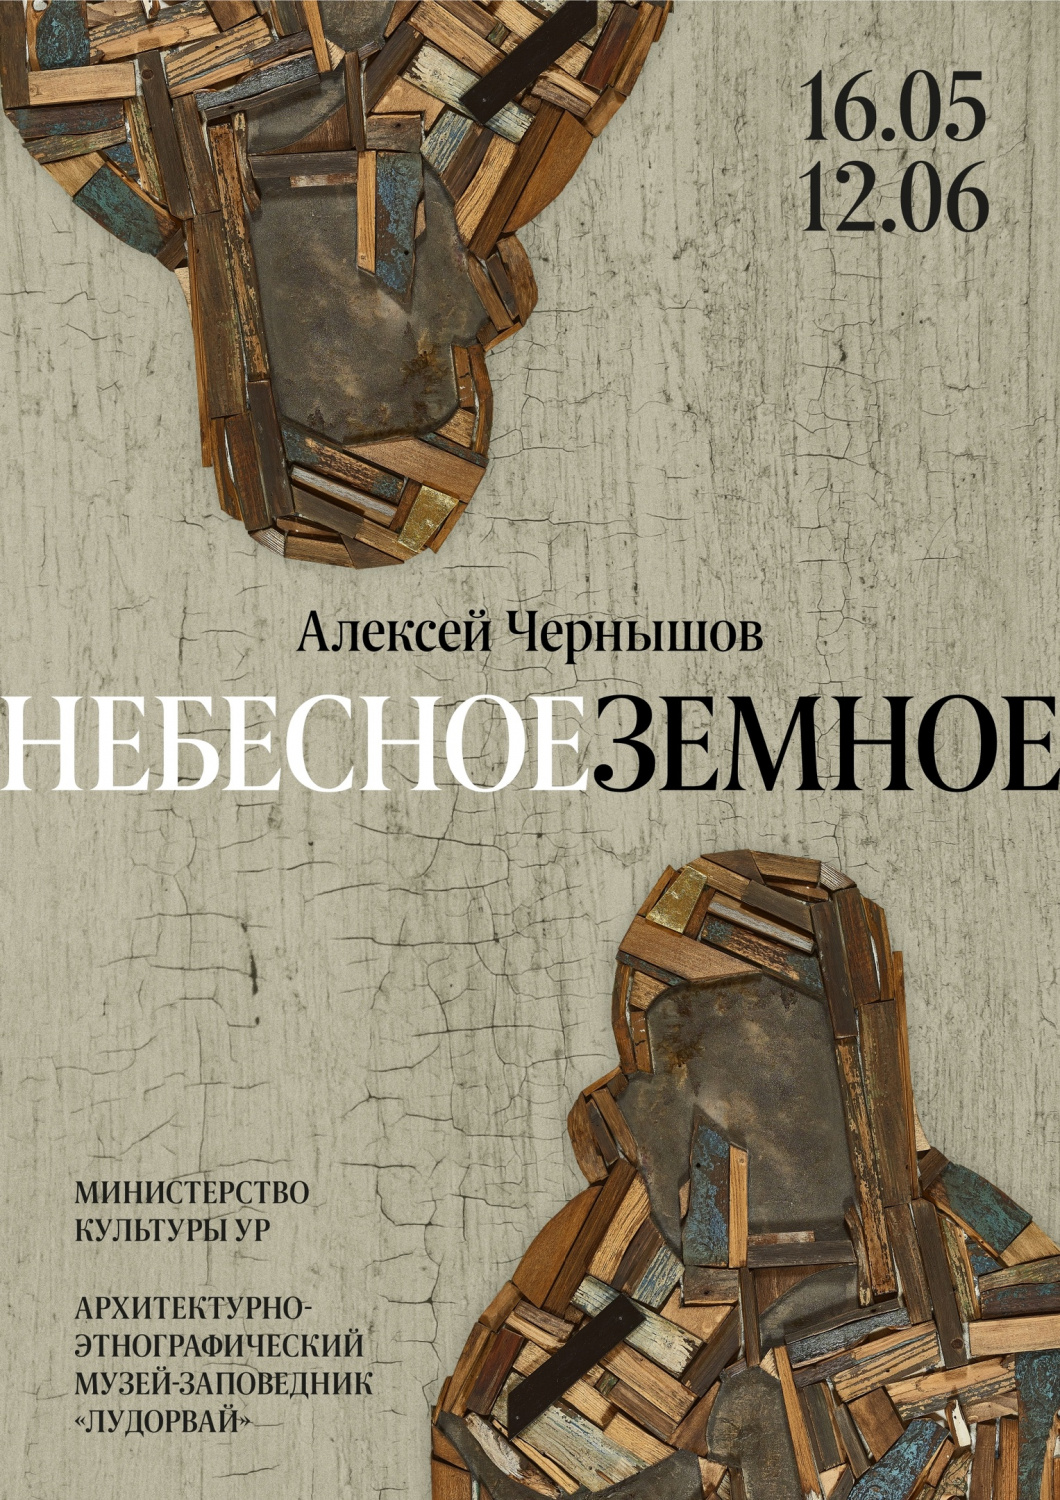 С 16 мая в выставочном зале Волостного правления начала работу авторская выставка художника Алексея Чернышова "Небесноеземное"